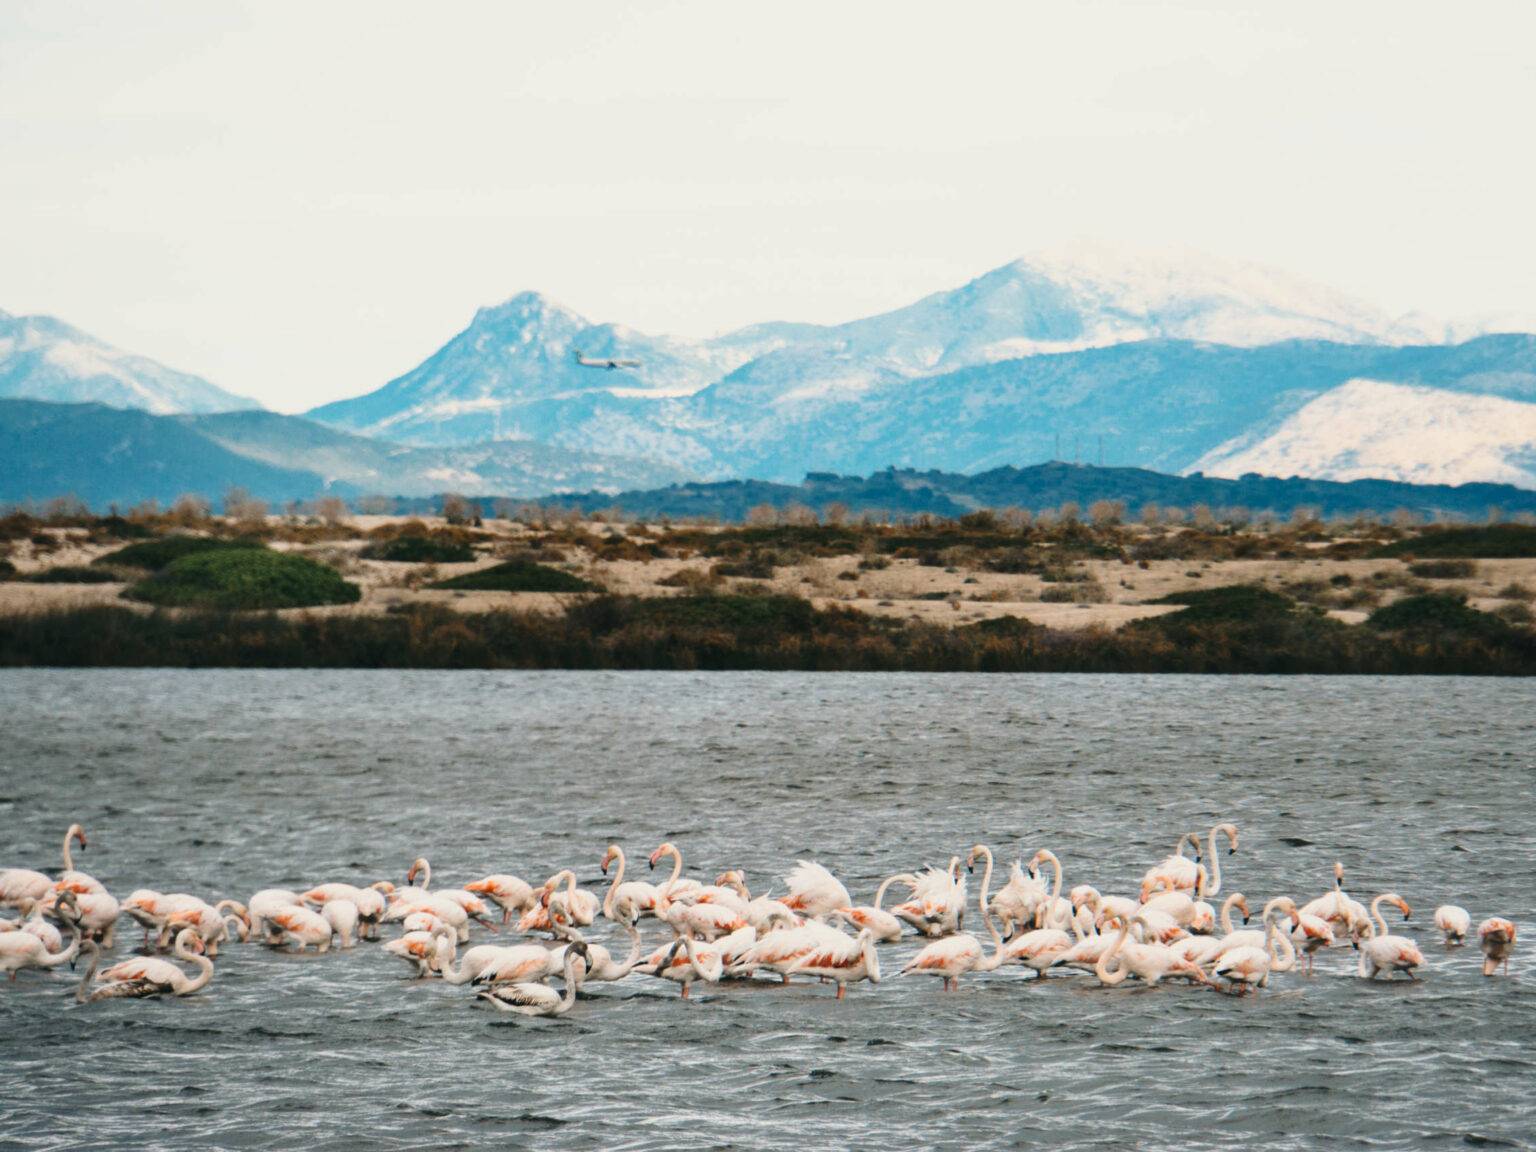 Auf dem Meer bewegt sich ein ganzer Schwarm von hellrosa Flamingos, hinter ihnen bietet sich ein blaues Bergpanorama, das hinter den Wolken verschwindet.